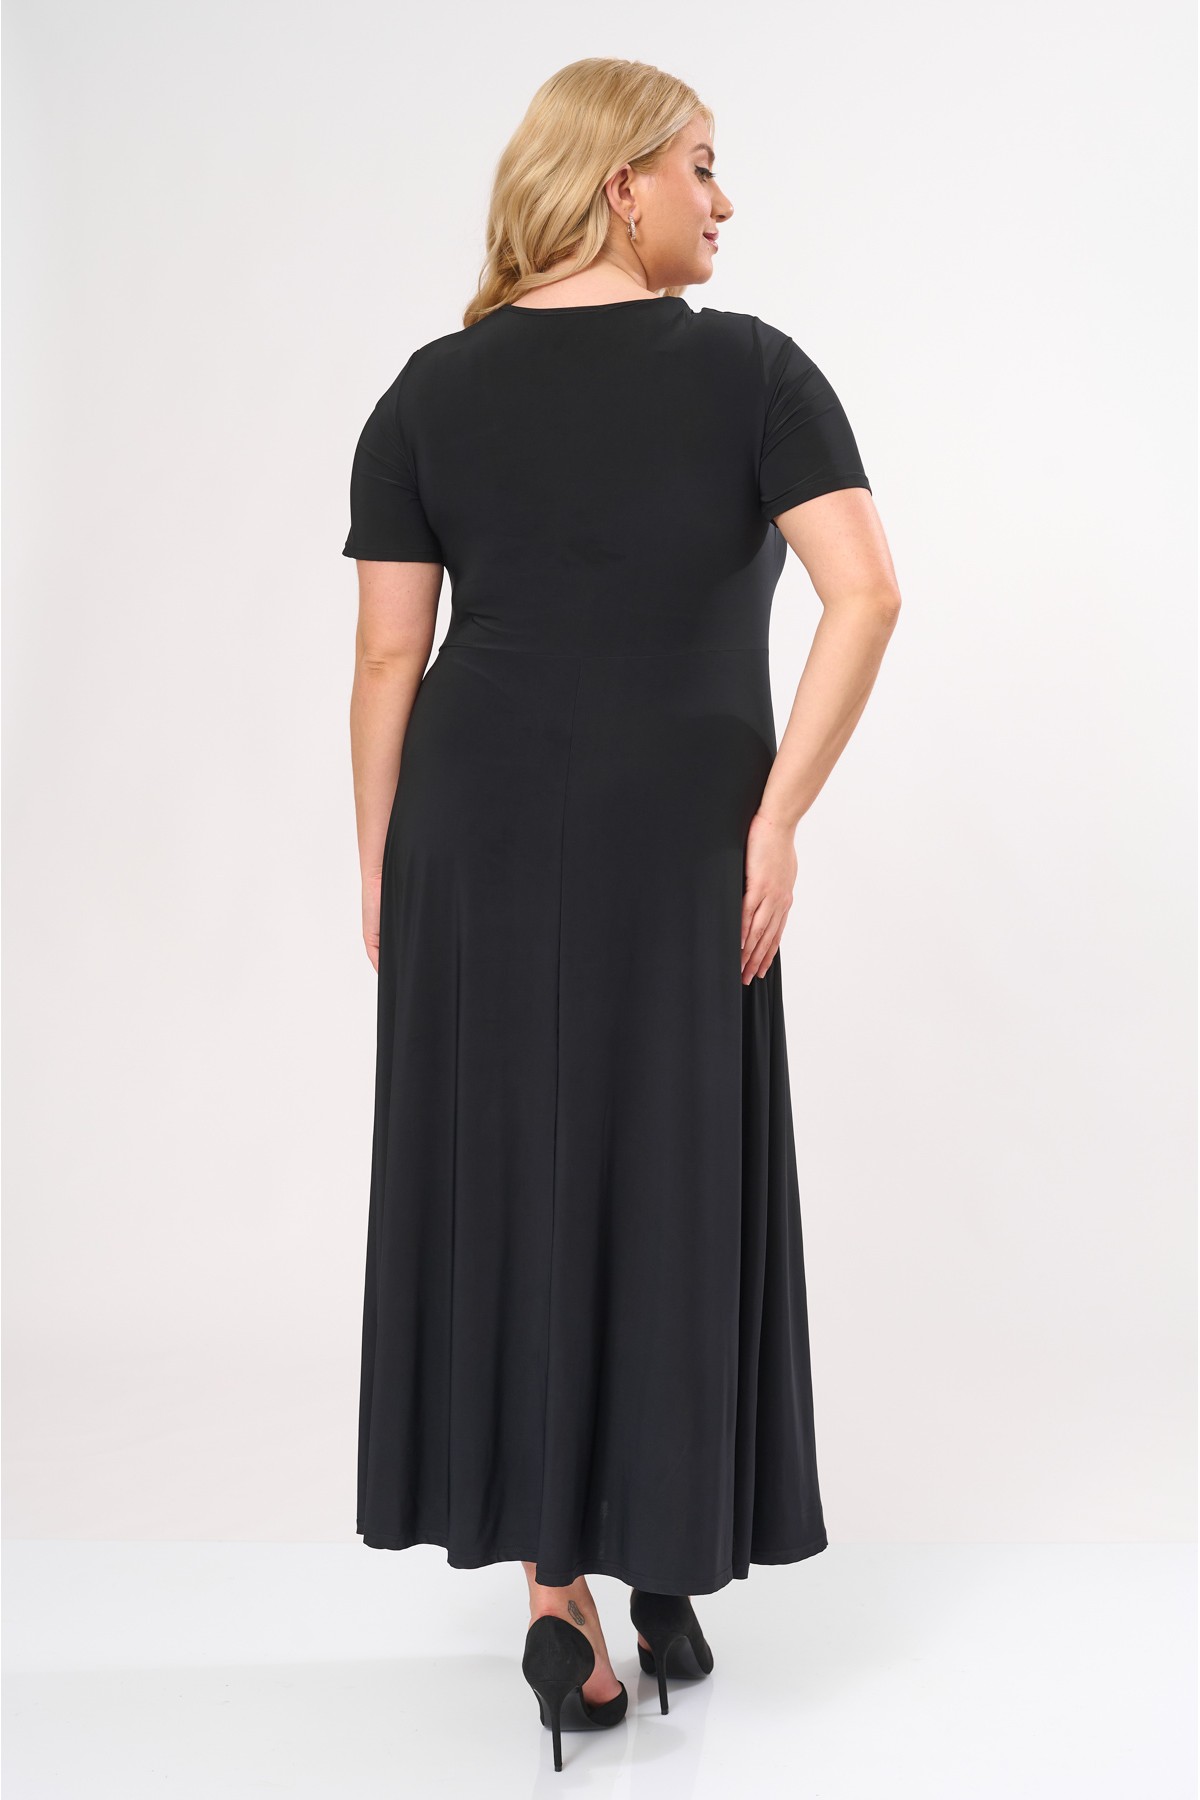  Φόρεμα μάξι με σούρα στο στήθος κοντό μανίκι μαύρο